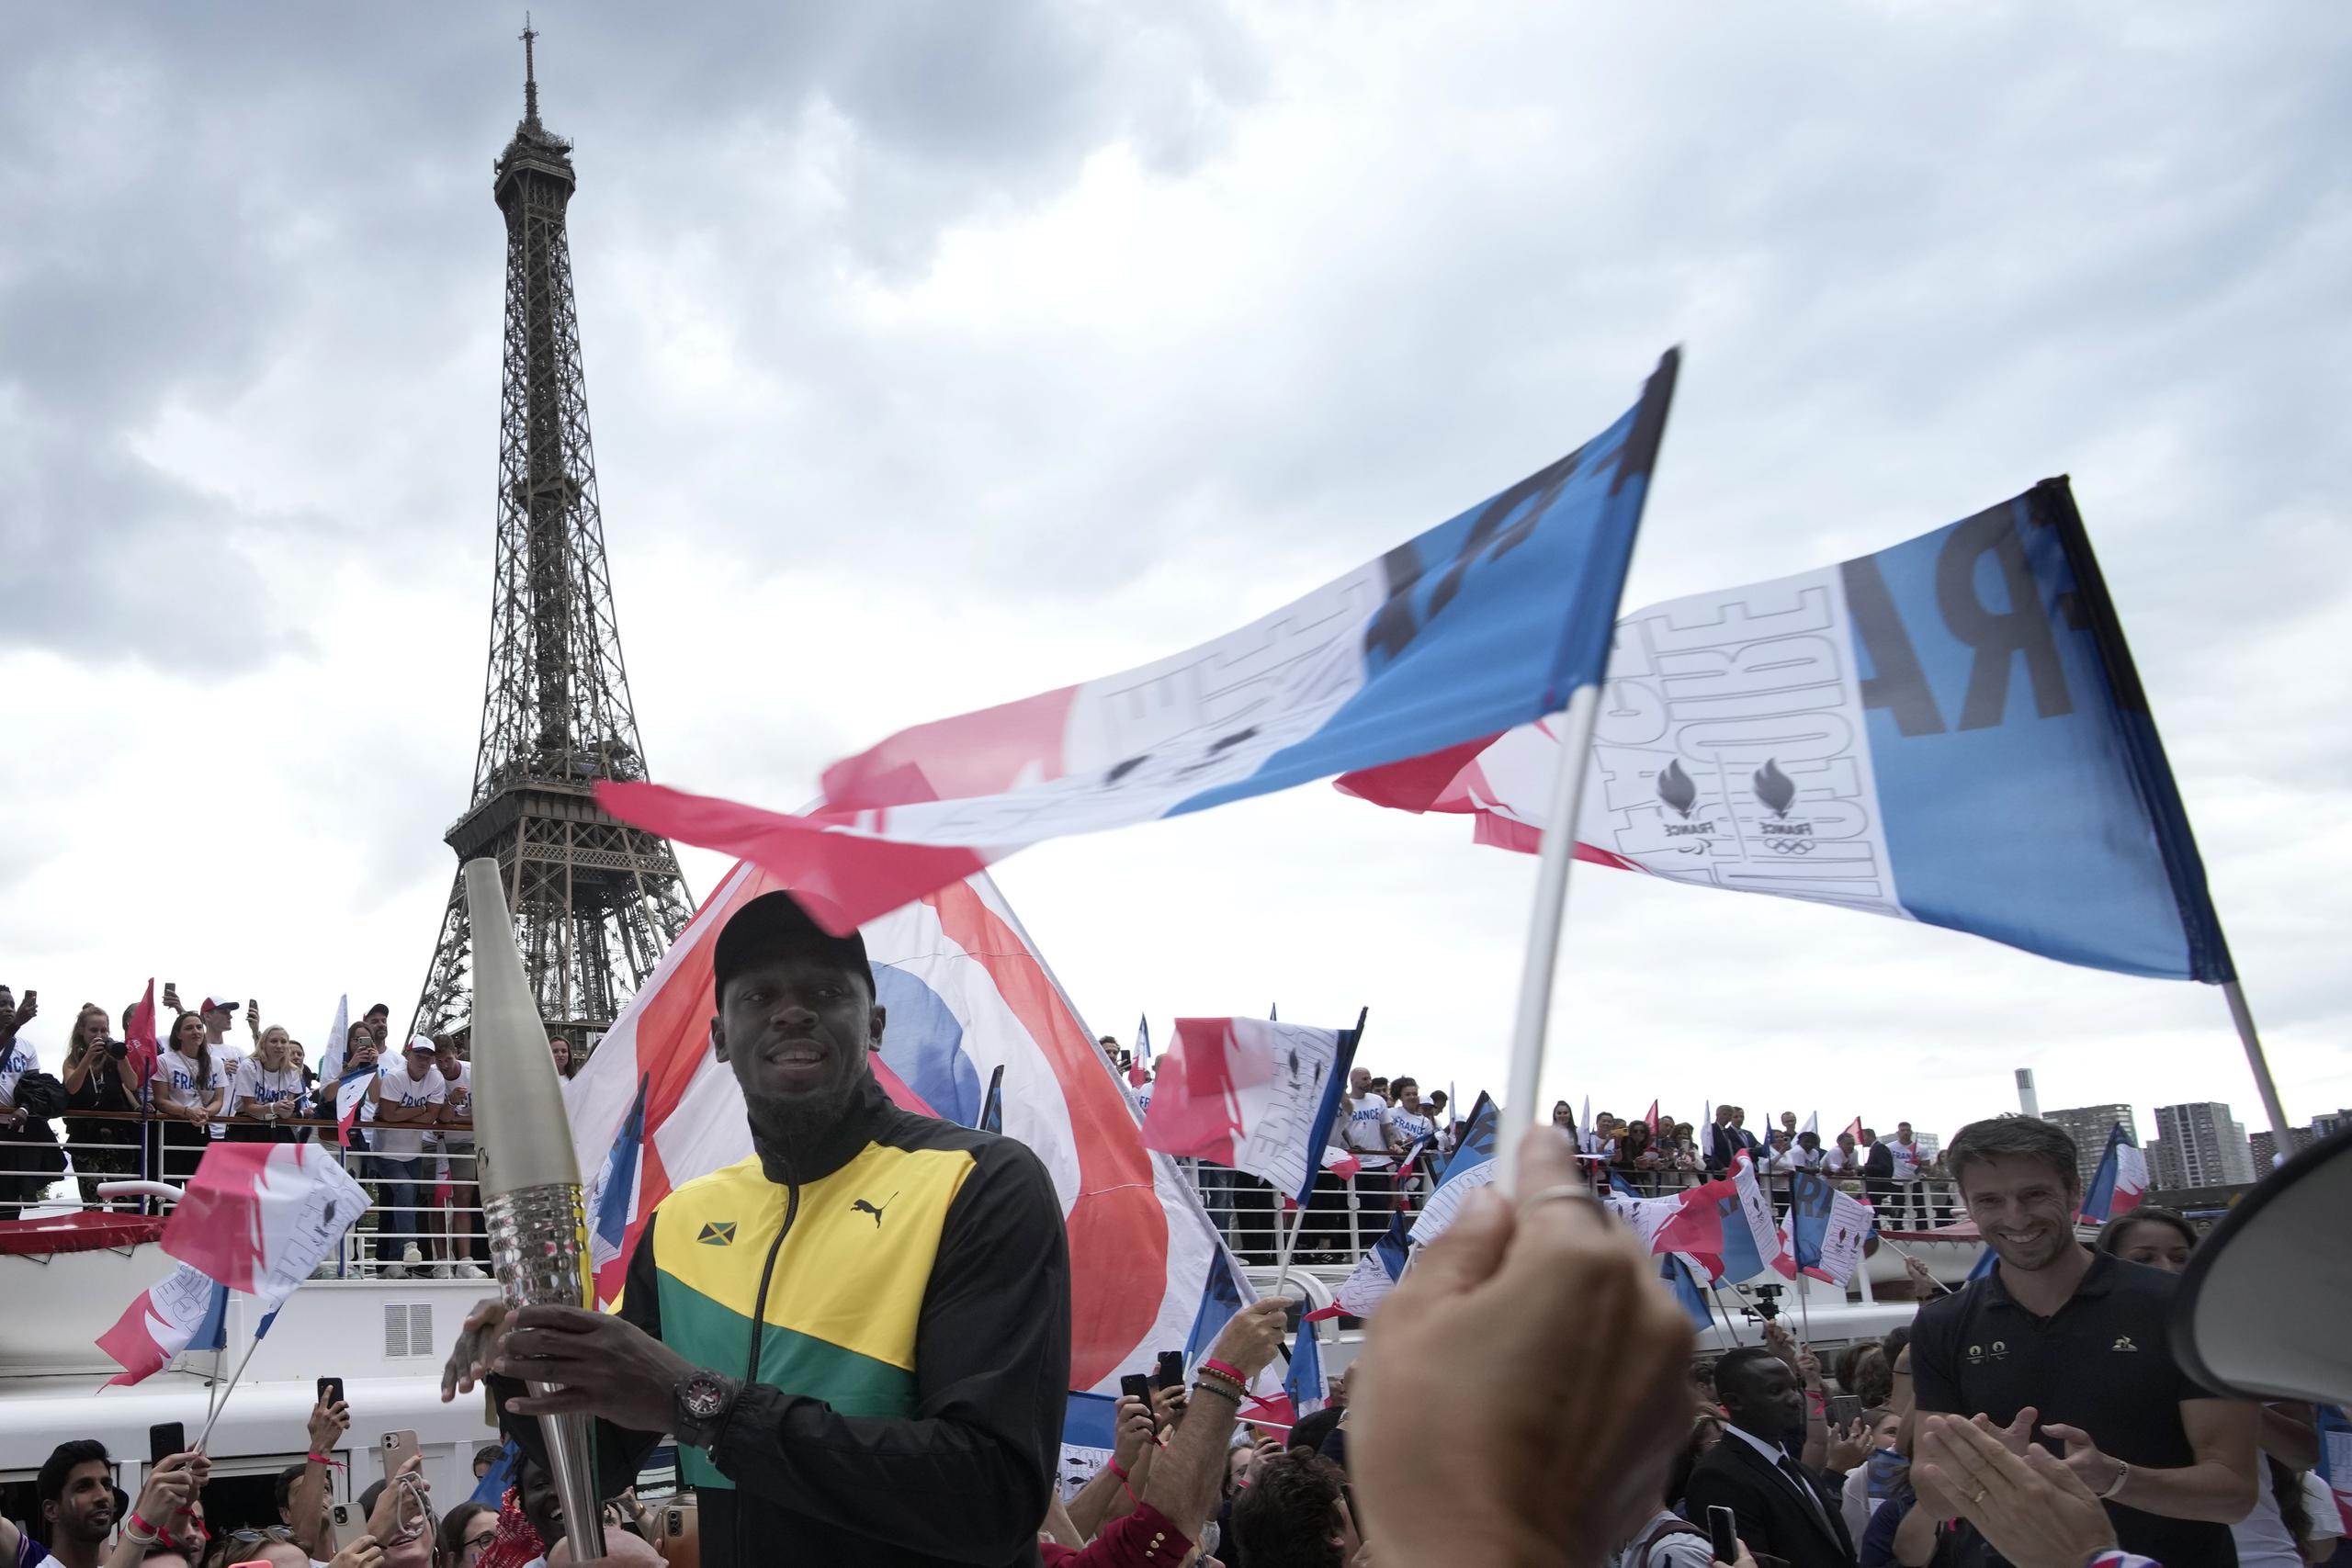 La antorcha de París 2024, aquí portada por la estrella mundial Usain Bolt en la presentación del símbolo, llegará a París luego de un recorrido de 80 días que iniciará en la costa de Marsella el 8 de mayo.